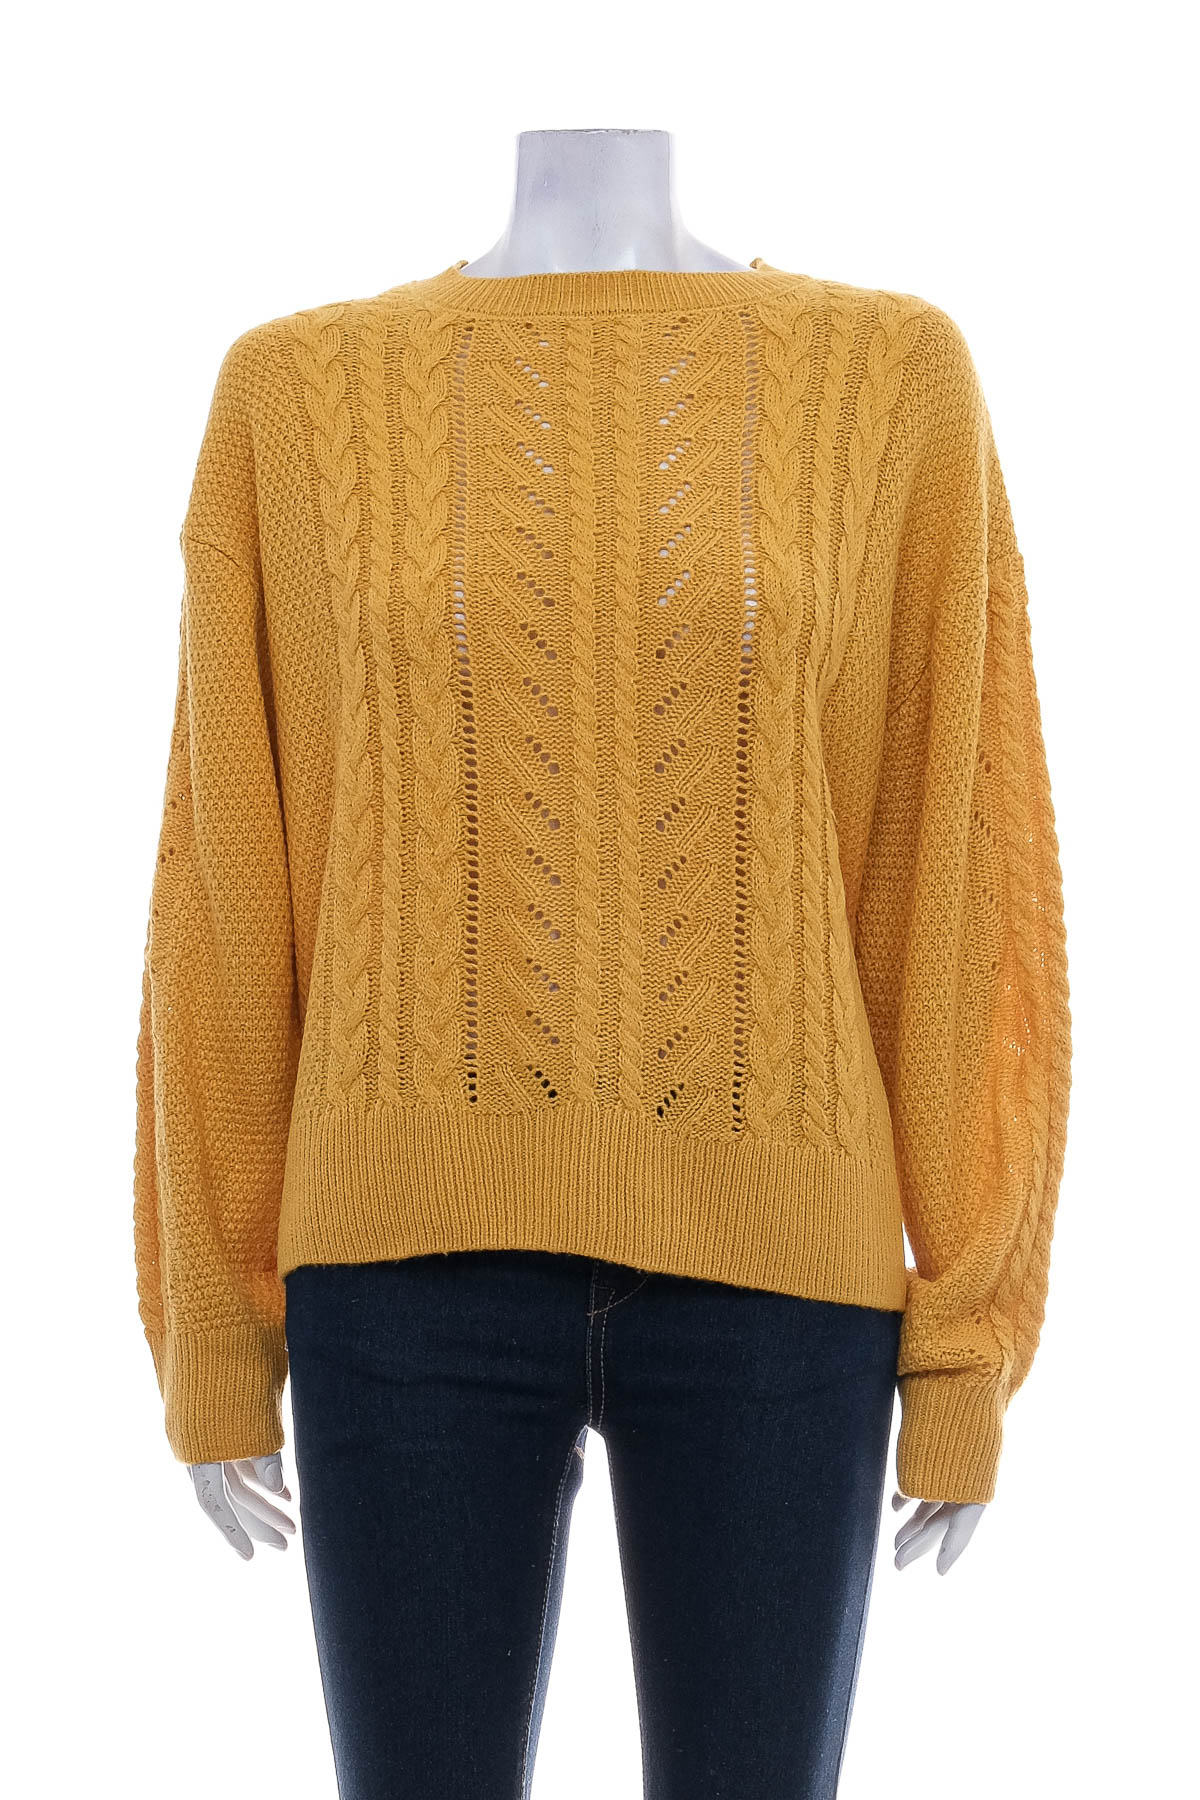 Women's sweater - LIDL - 0